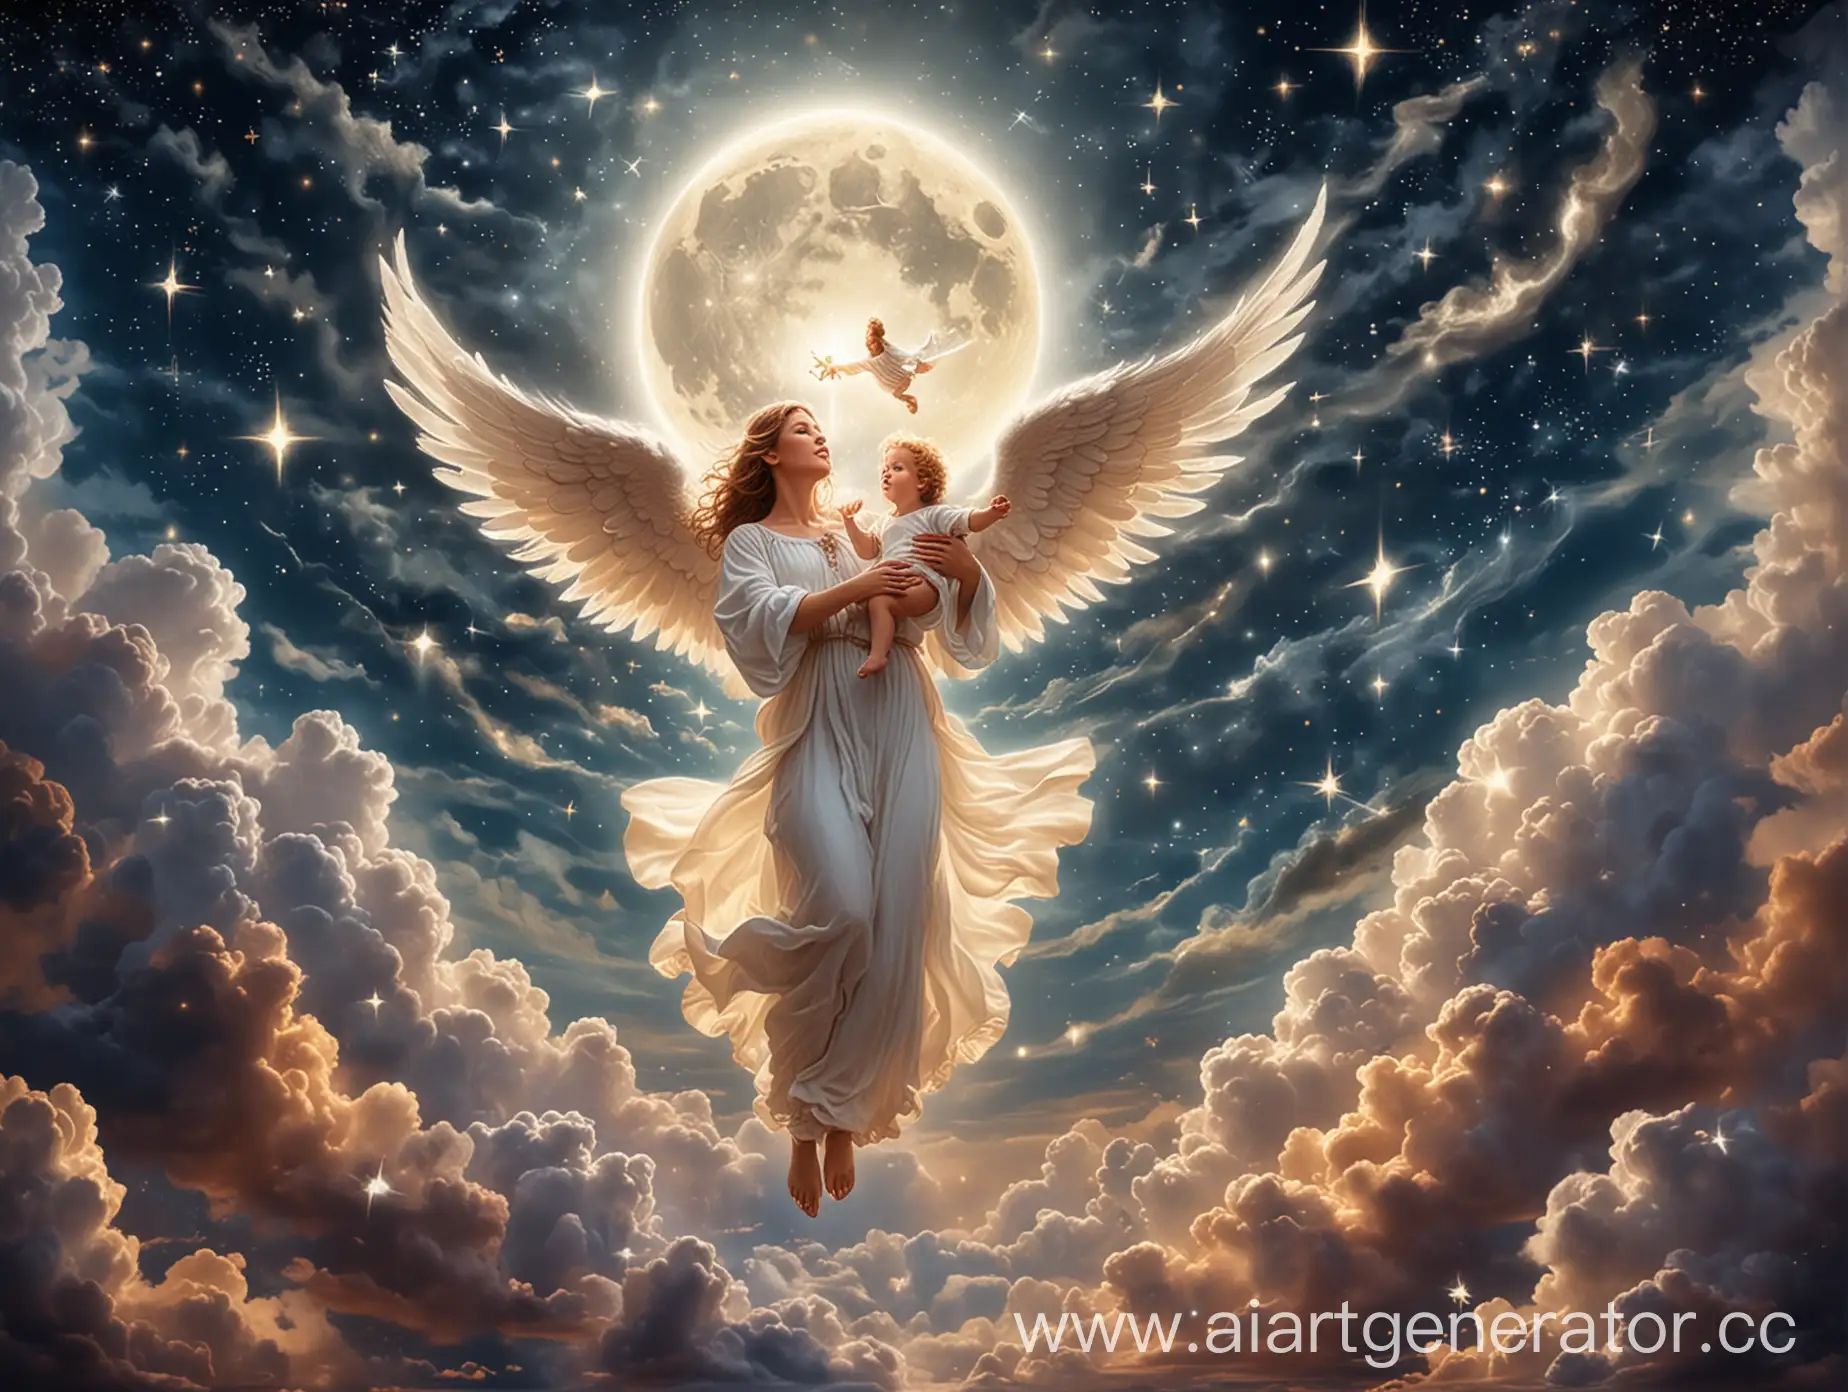 Ангел летит в небе и держит маленького ребенка на руках, светят звезды, горит месяц, облака